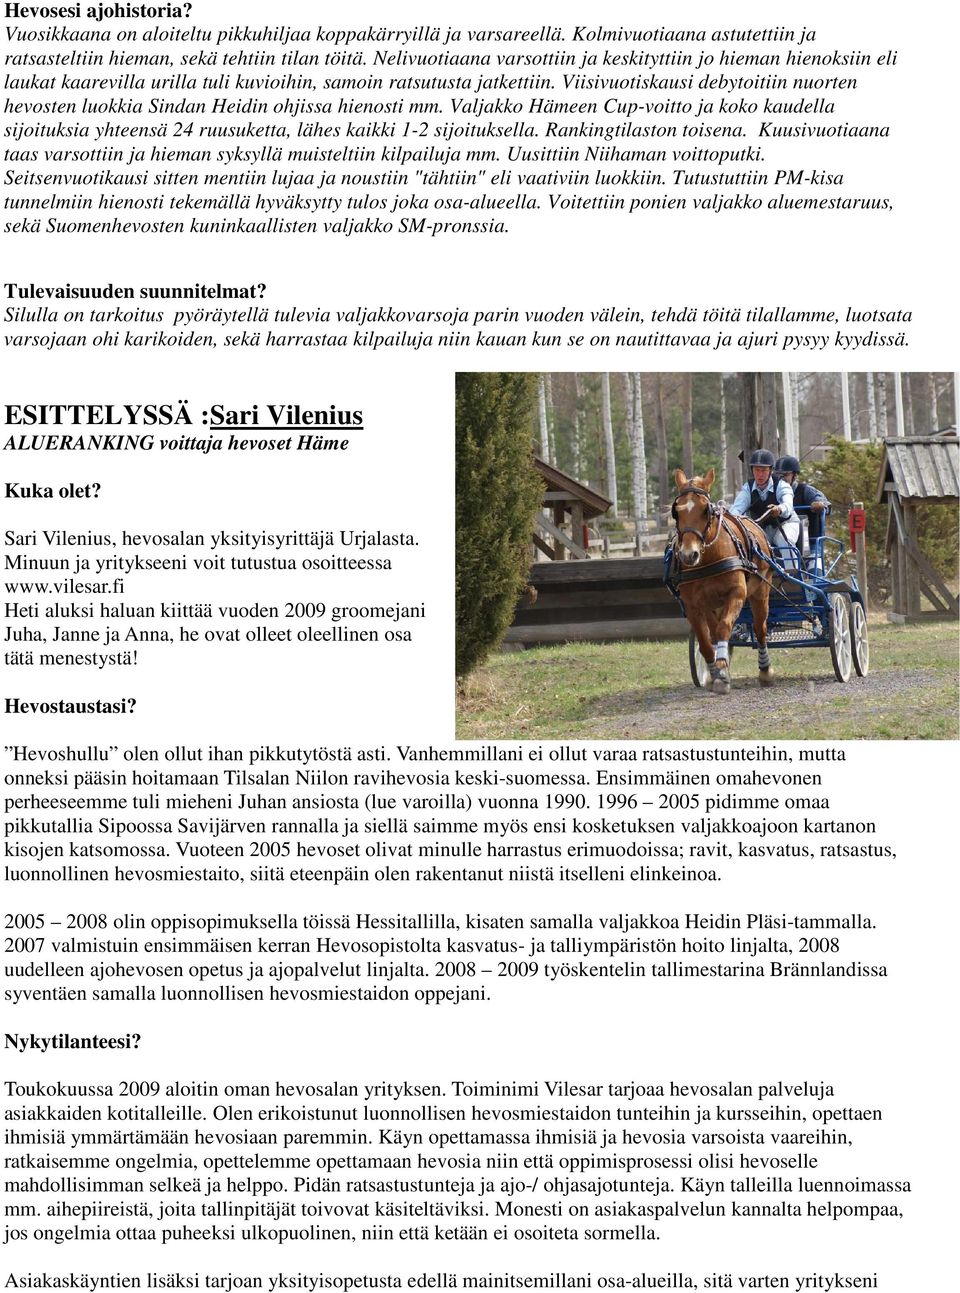 Viisivuotiskausi debytoitiin nuorten hevosten luokkia Sindan Heidin ohjissa hienosti mm. Valjakko Hämeen Cup-voitto ja koko kaudella sijoituksia yhteensä 24 ruusuketta, lähes kaikki 1-2 sijoituksella.